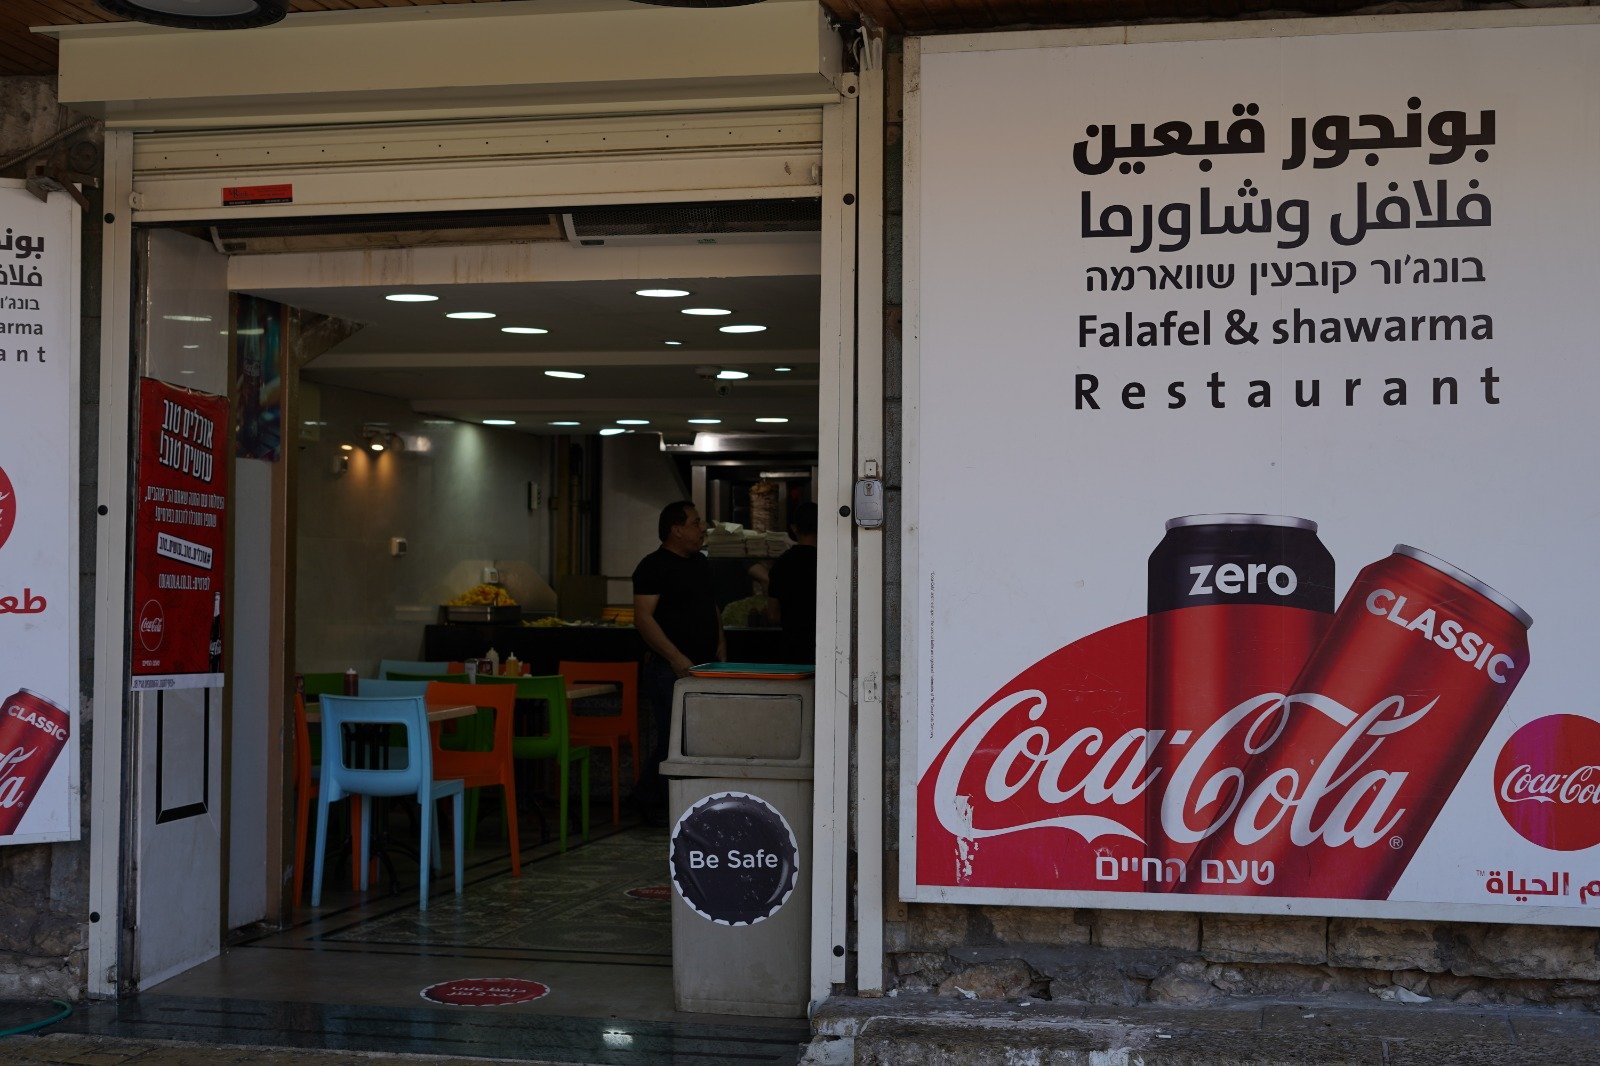 اشتقنالكم ومنستناكم" شعار حملة كوكا-كولا لدعم محلات الأكل السريع والمطاعم-3